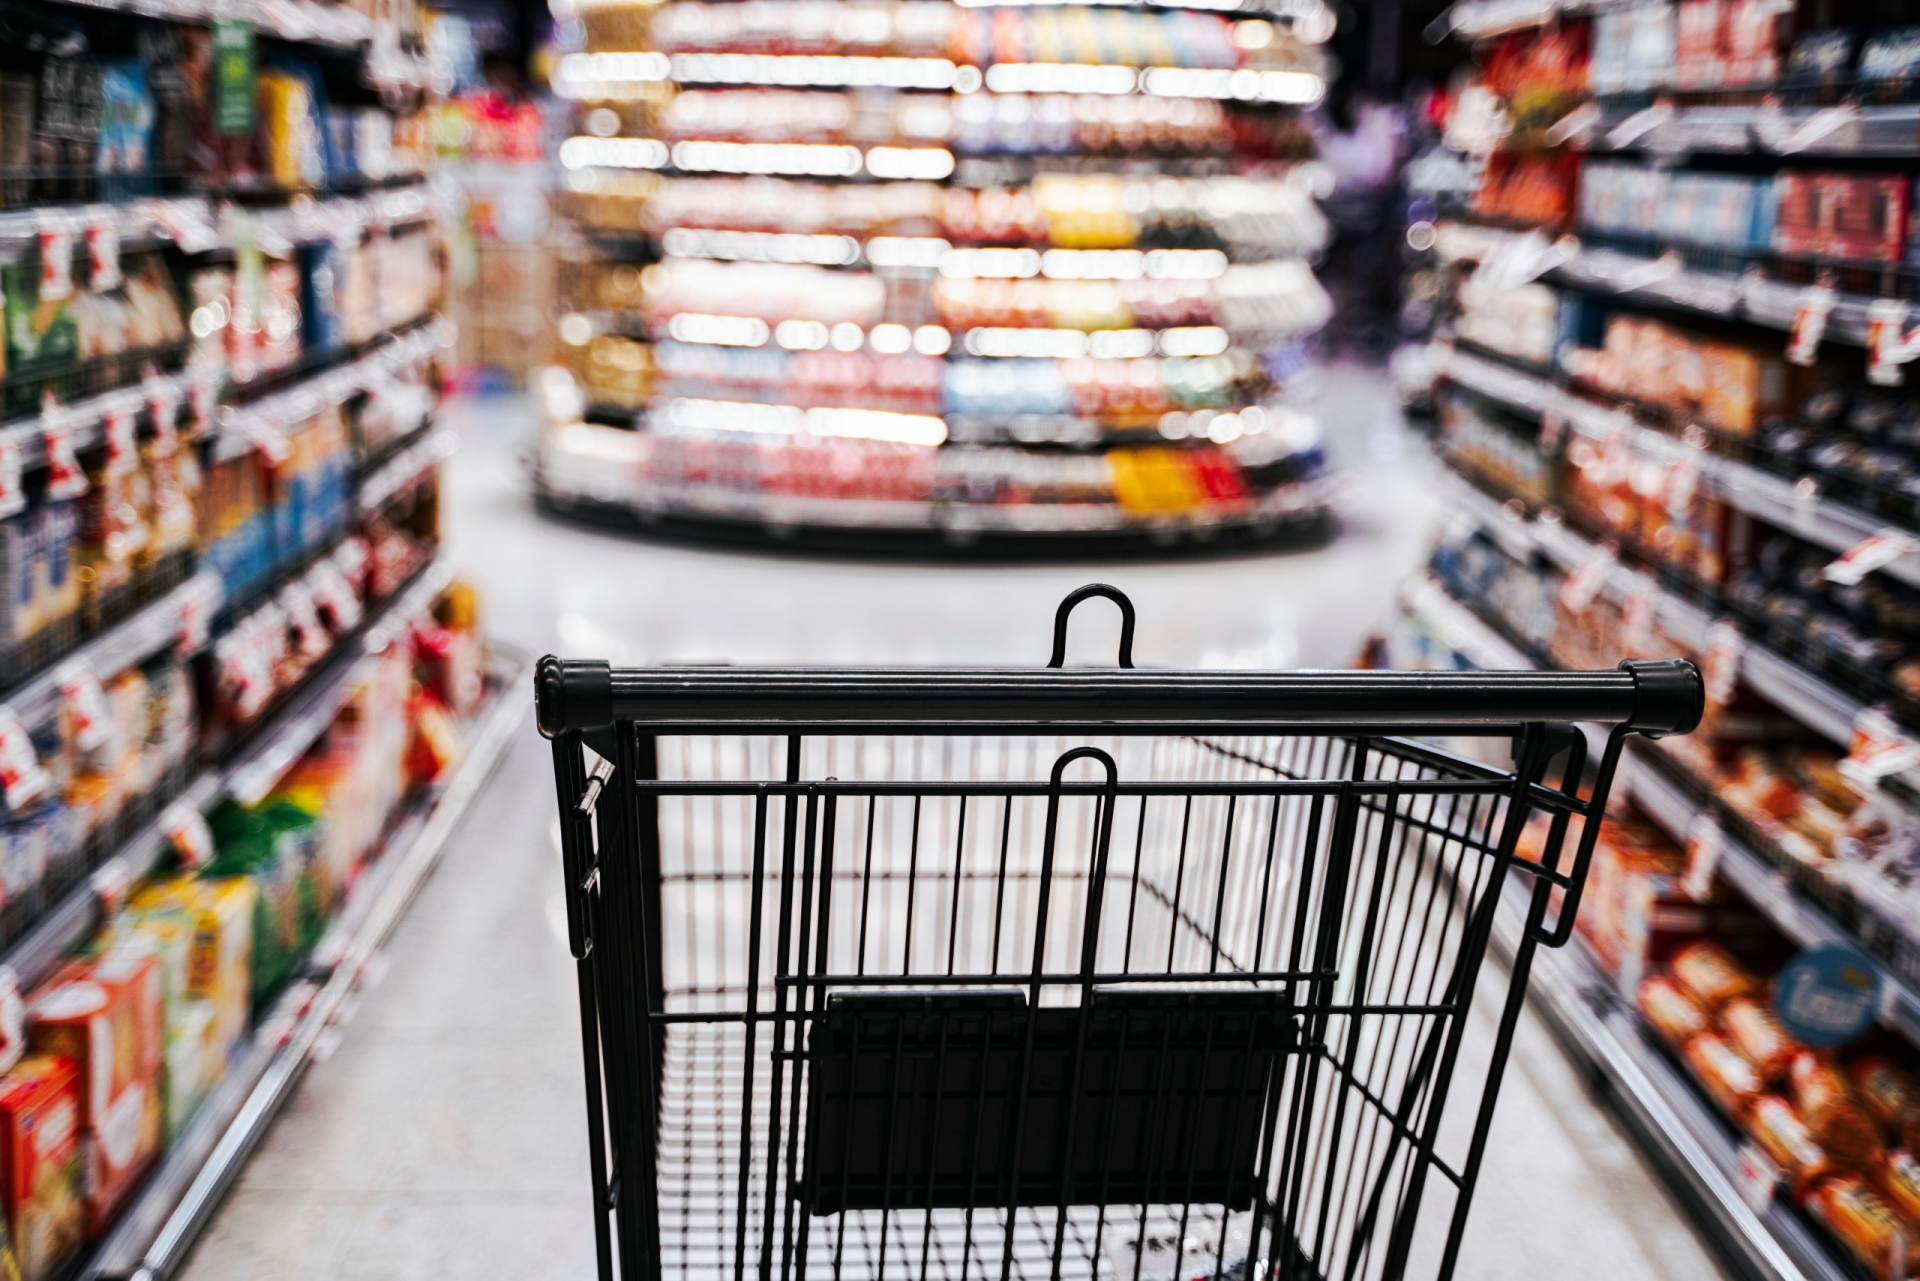 Nhân viên tiết lộ 7 thứ không nên mua trong siêu thị, càng giảm giá càng phải tránh - ảnh 1